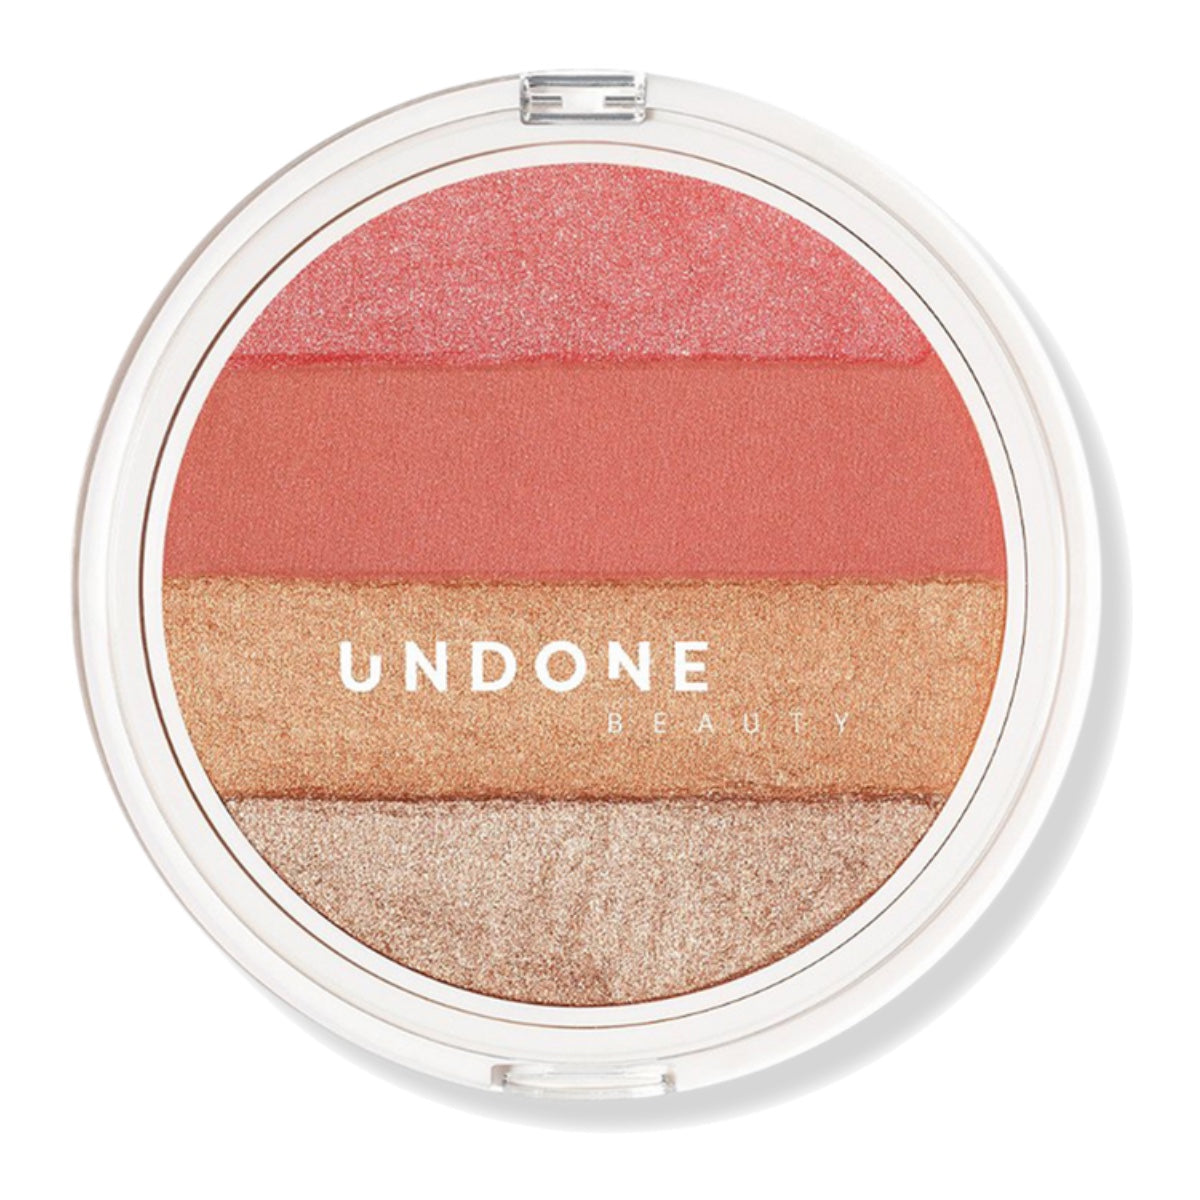 Undone Beauty Sunset Bronzer 4-in-1 Radiance Palette